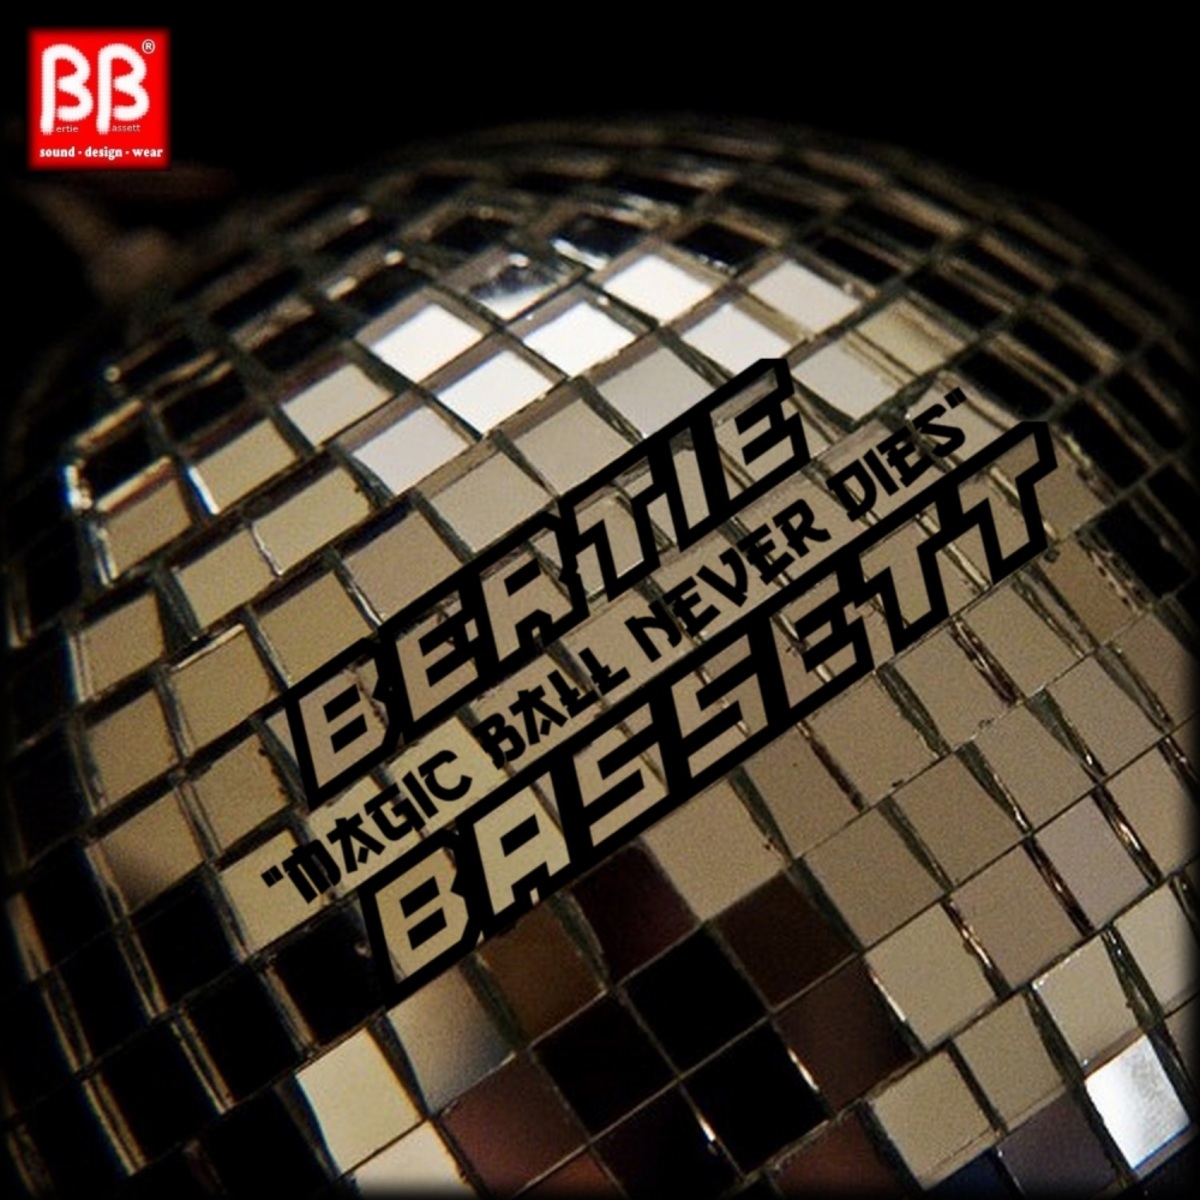 Bertie Bassett - Magic Ball Never Dies / BB sound